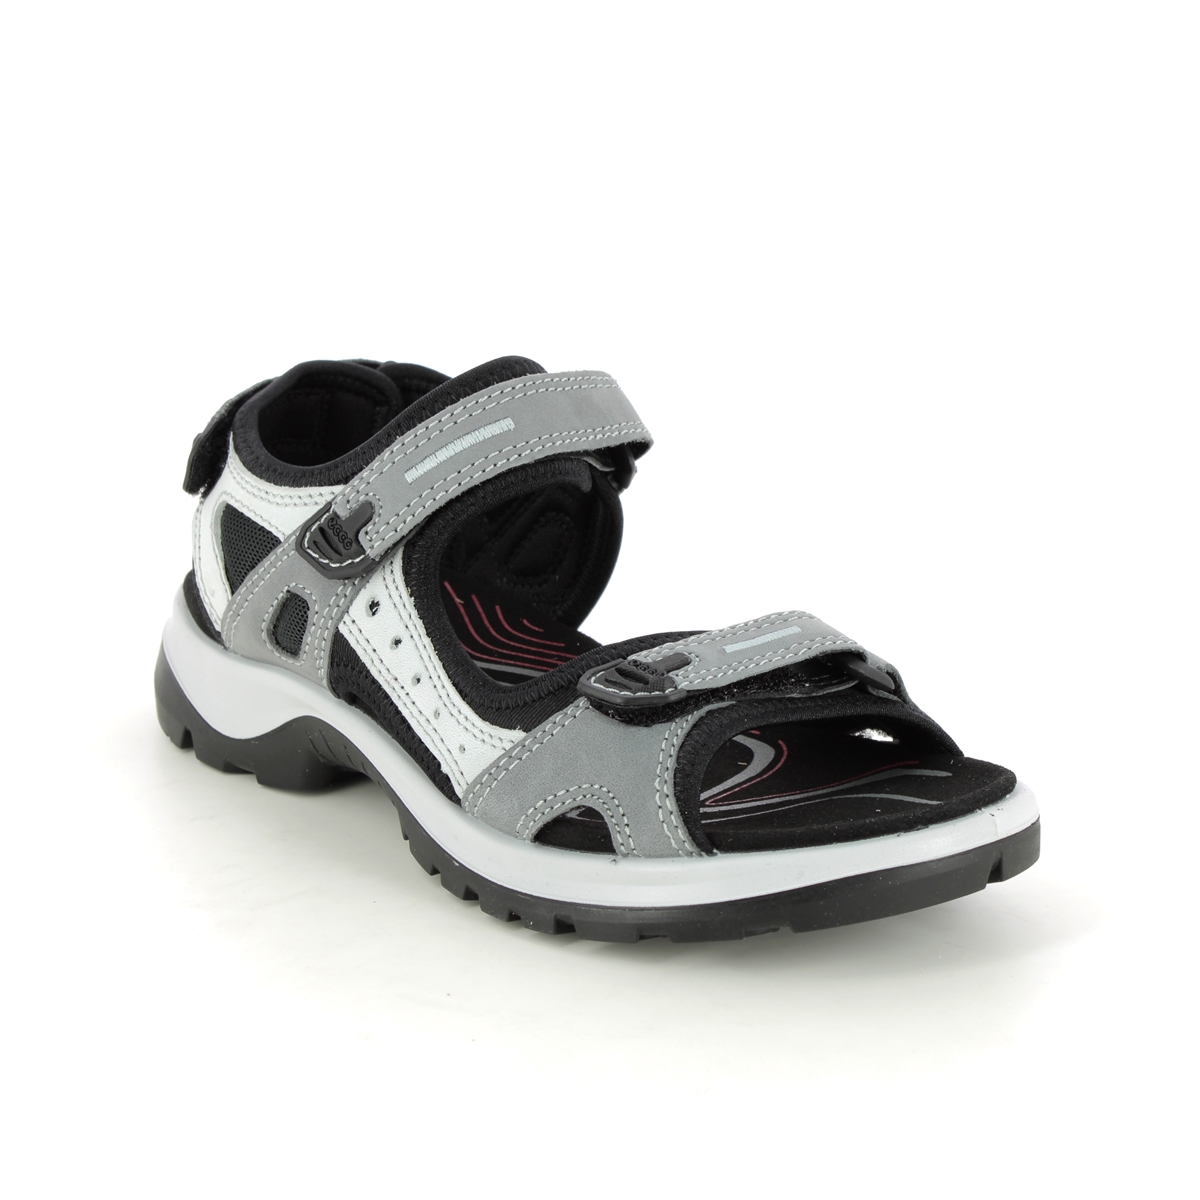 Ecco Offroad Lady Grey Nubuck Womens Walking Sandals 069563-02244 In Size 36 In Plain Grey Nubuck